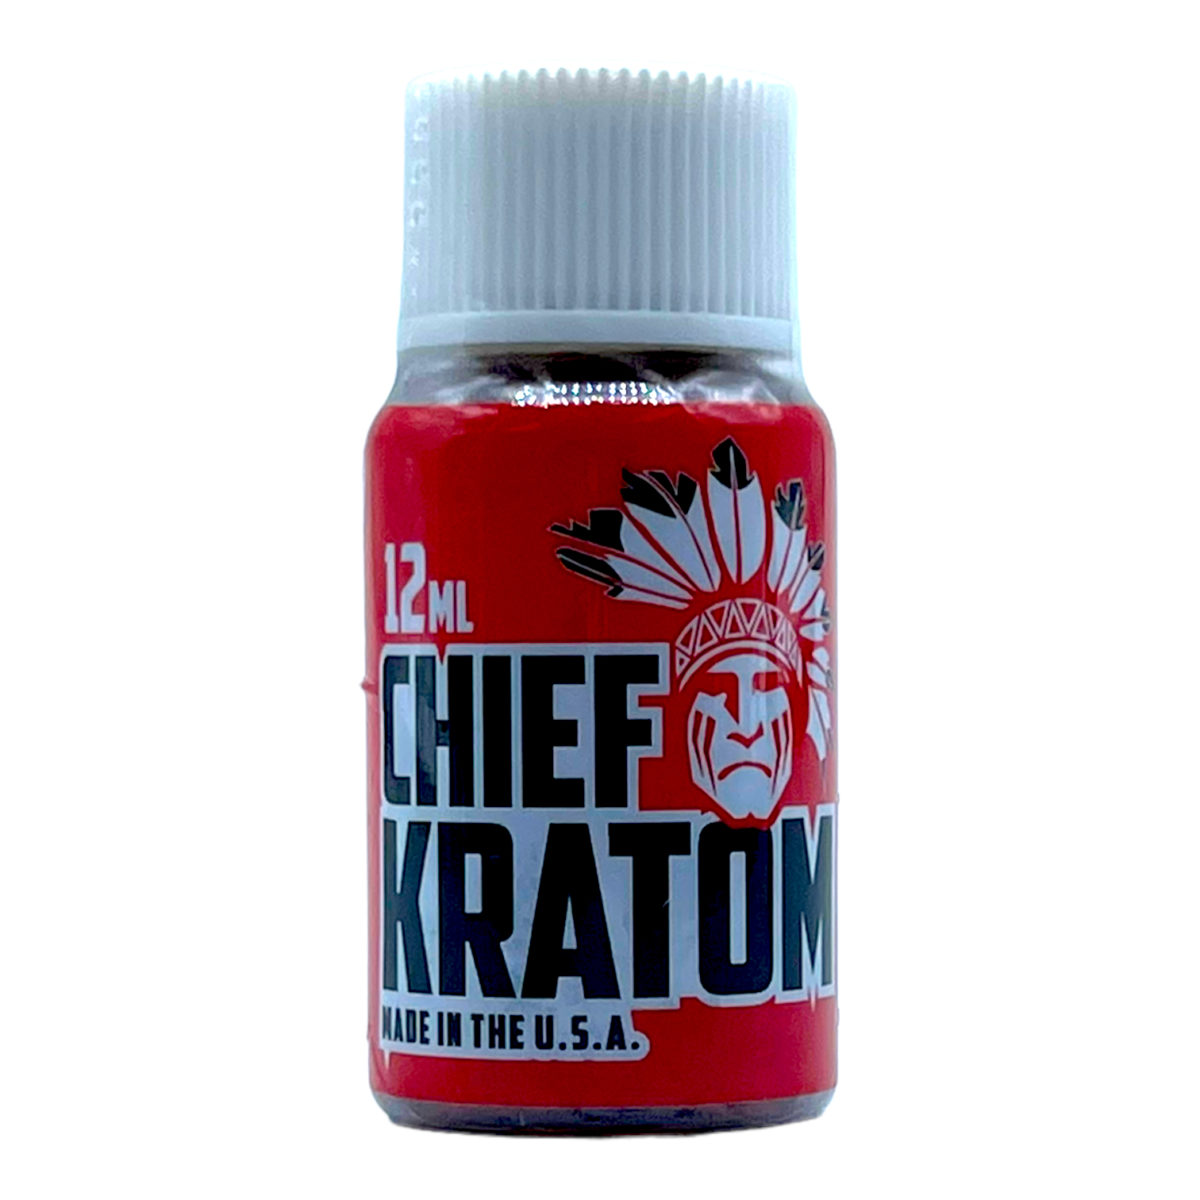 Chief Kratom Extract Shot – 12ml